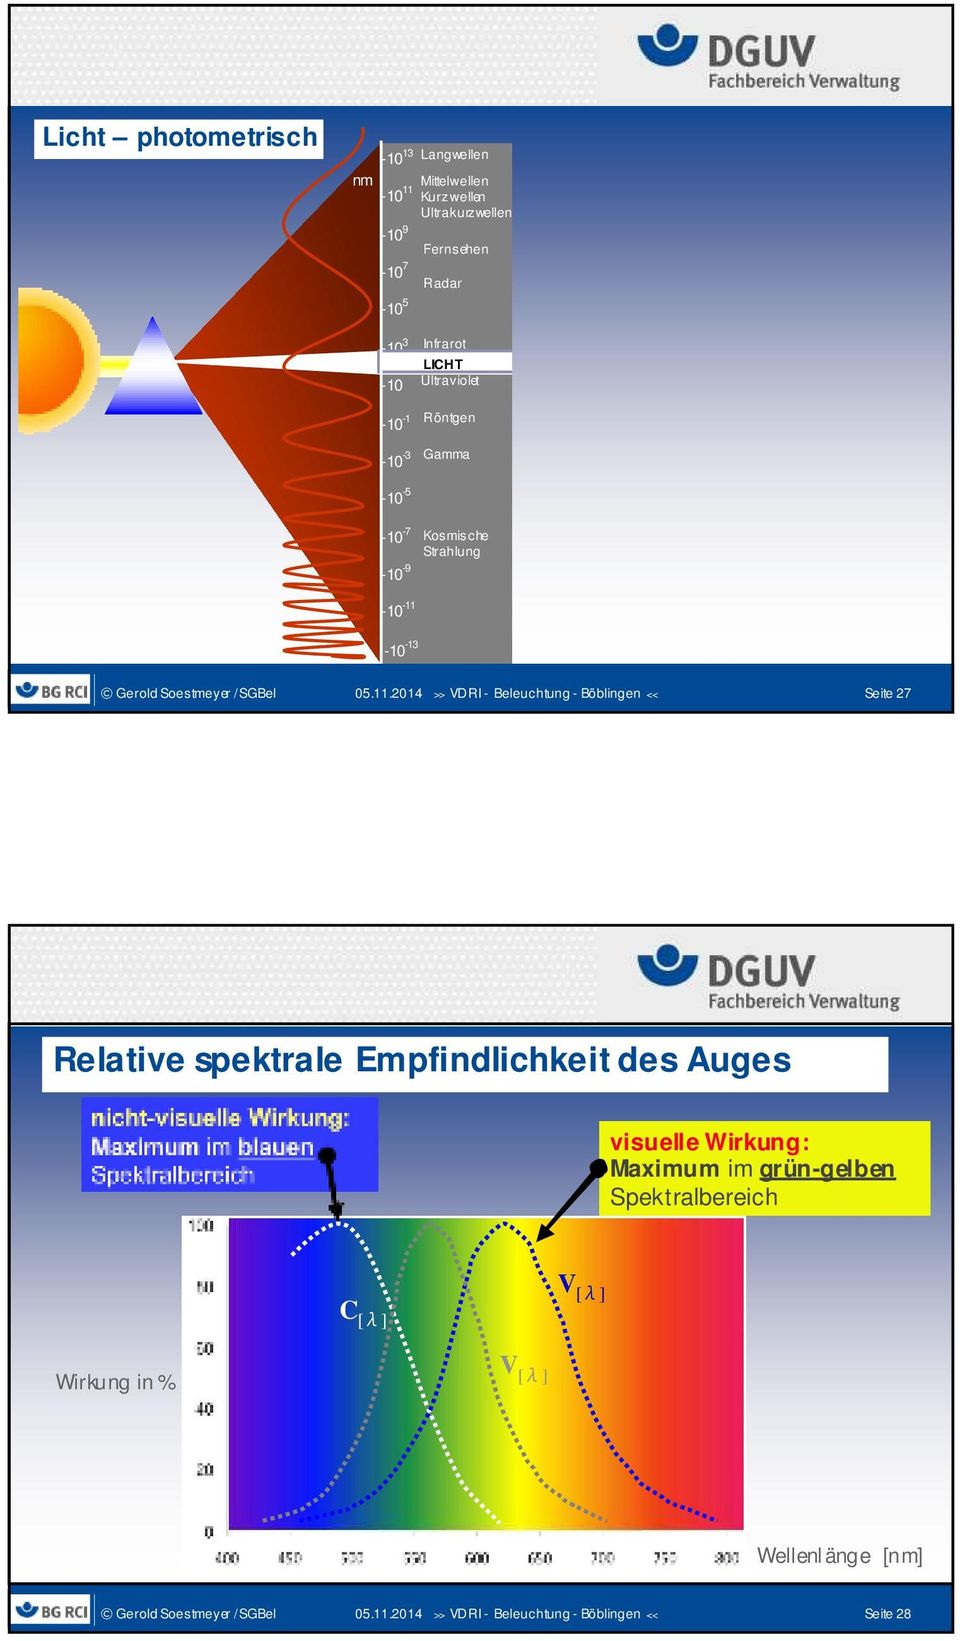 Kosmische Strahlung - 450-400 - 380 Seite 27 Relative spektrale Empfindlichkeit des Auges visuelle Wirkung: Maximum im grün-gelben